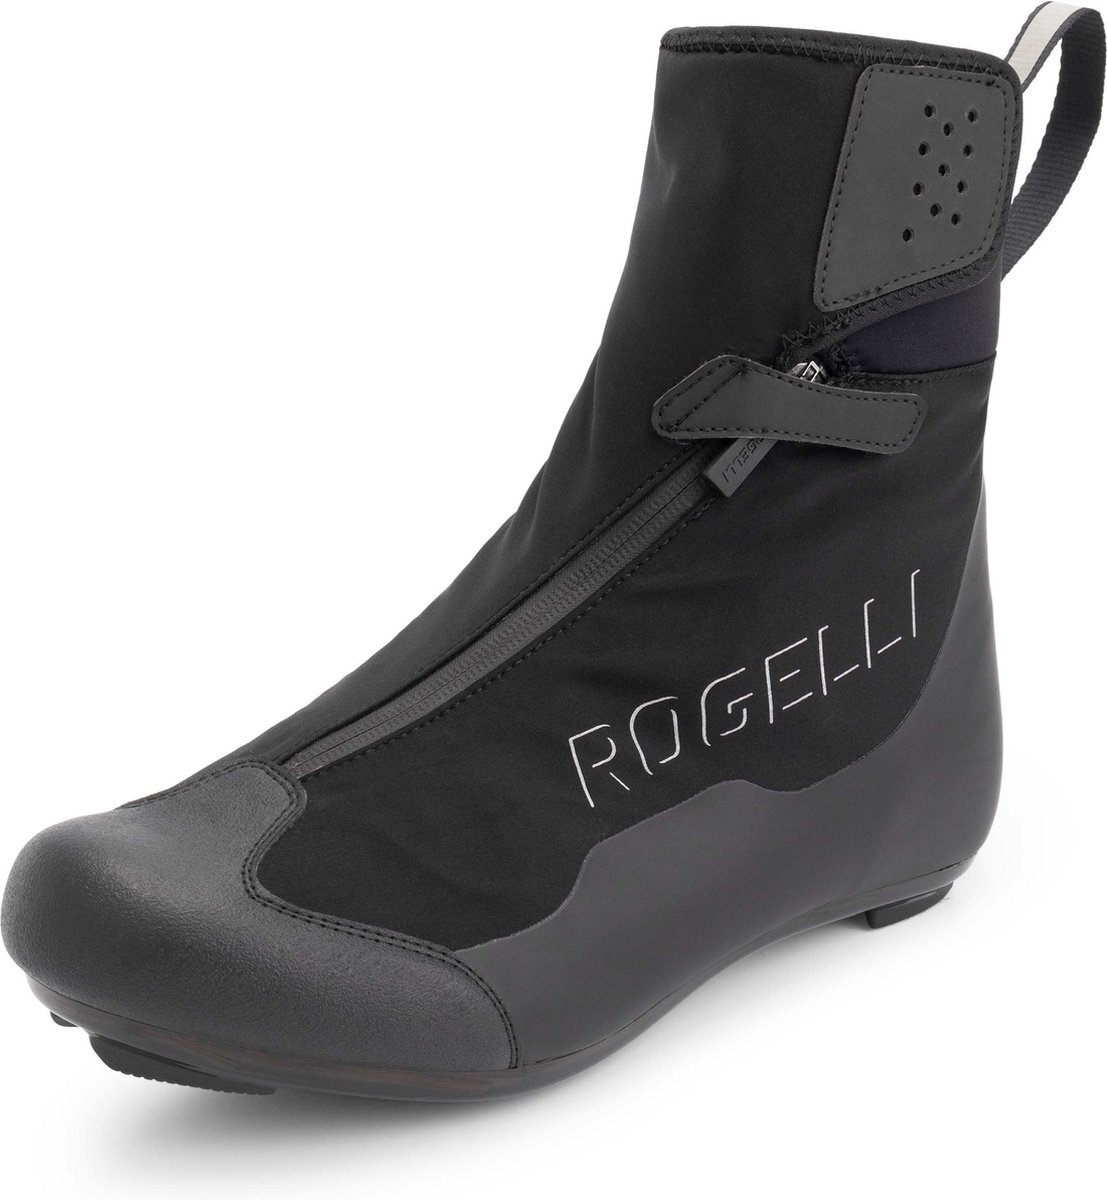 Rogelli R-1000 Artic Raceschoenen Zwart - Maat 38